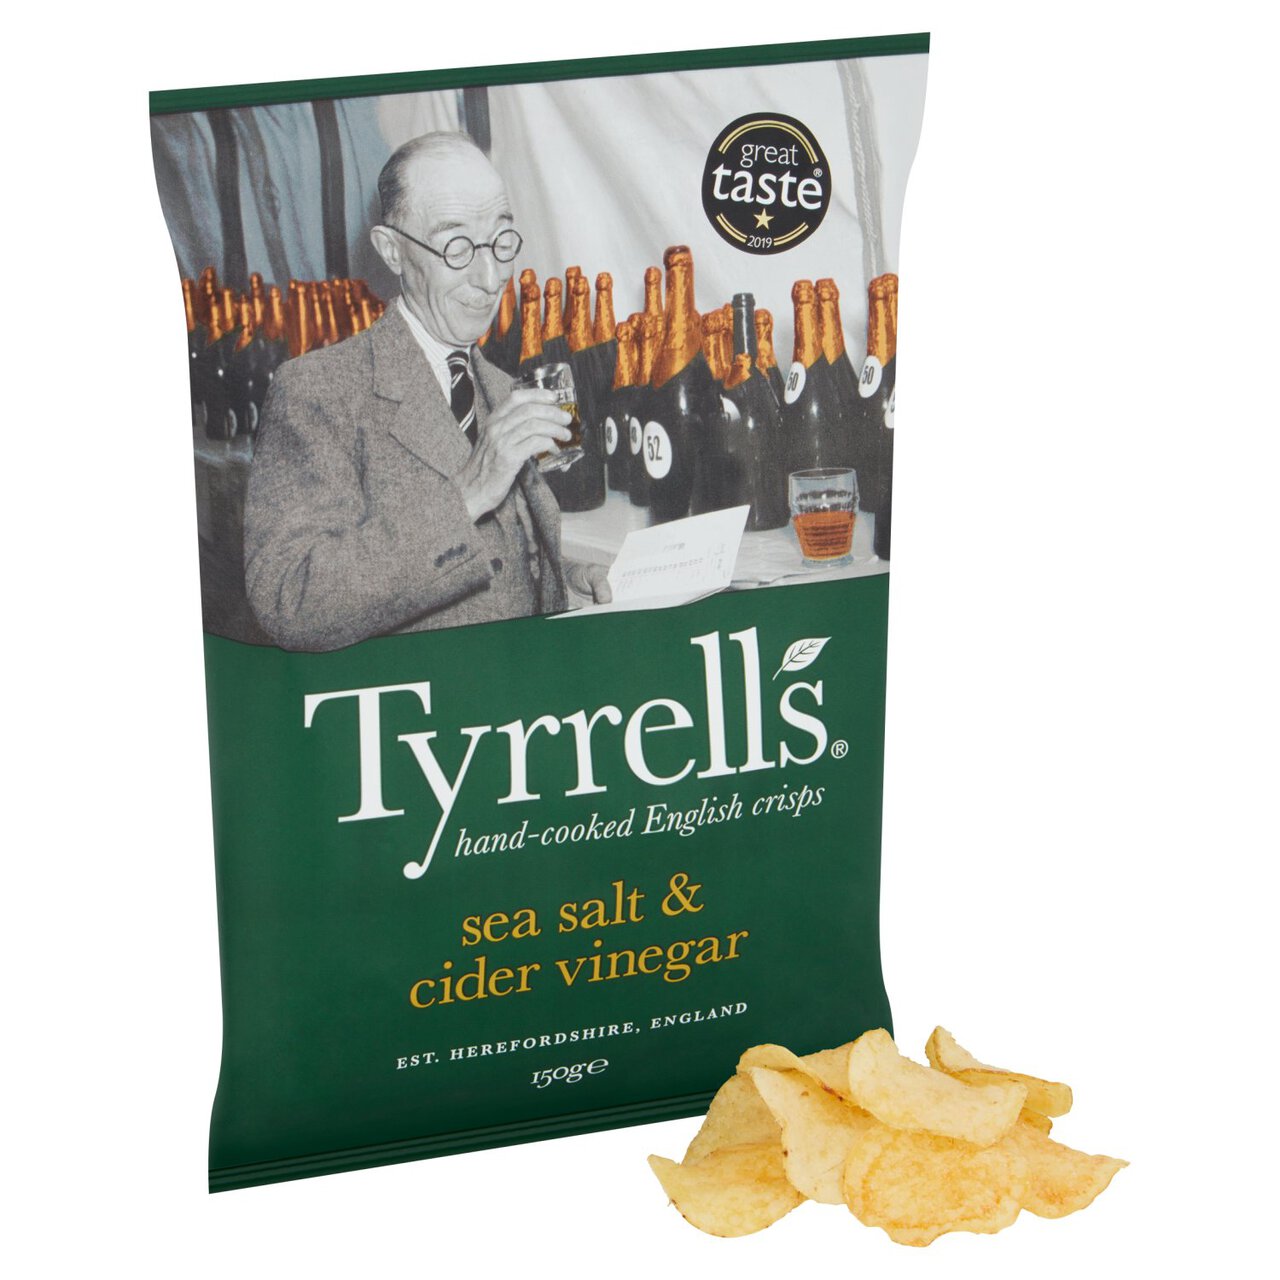 Tyrrells Sea Salt & Cider Vinegar Sharing Crisps 150g